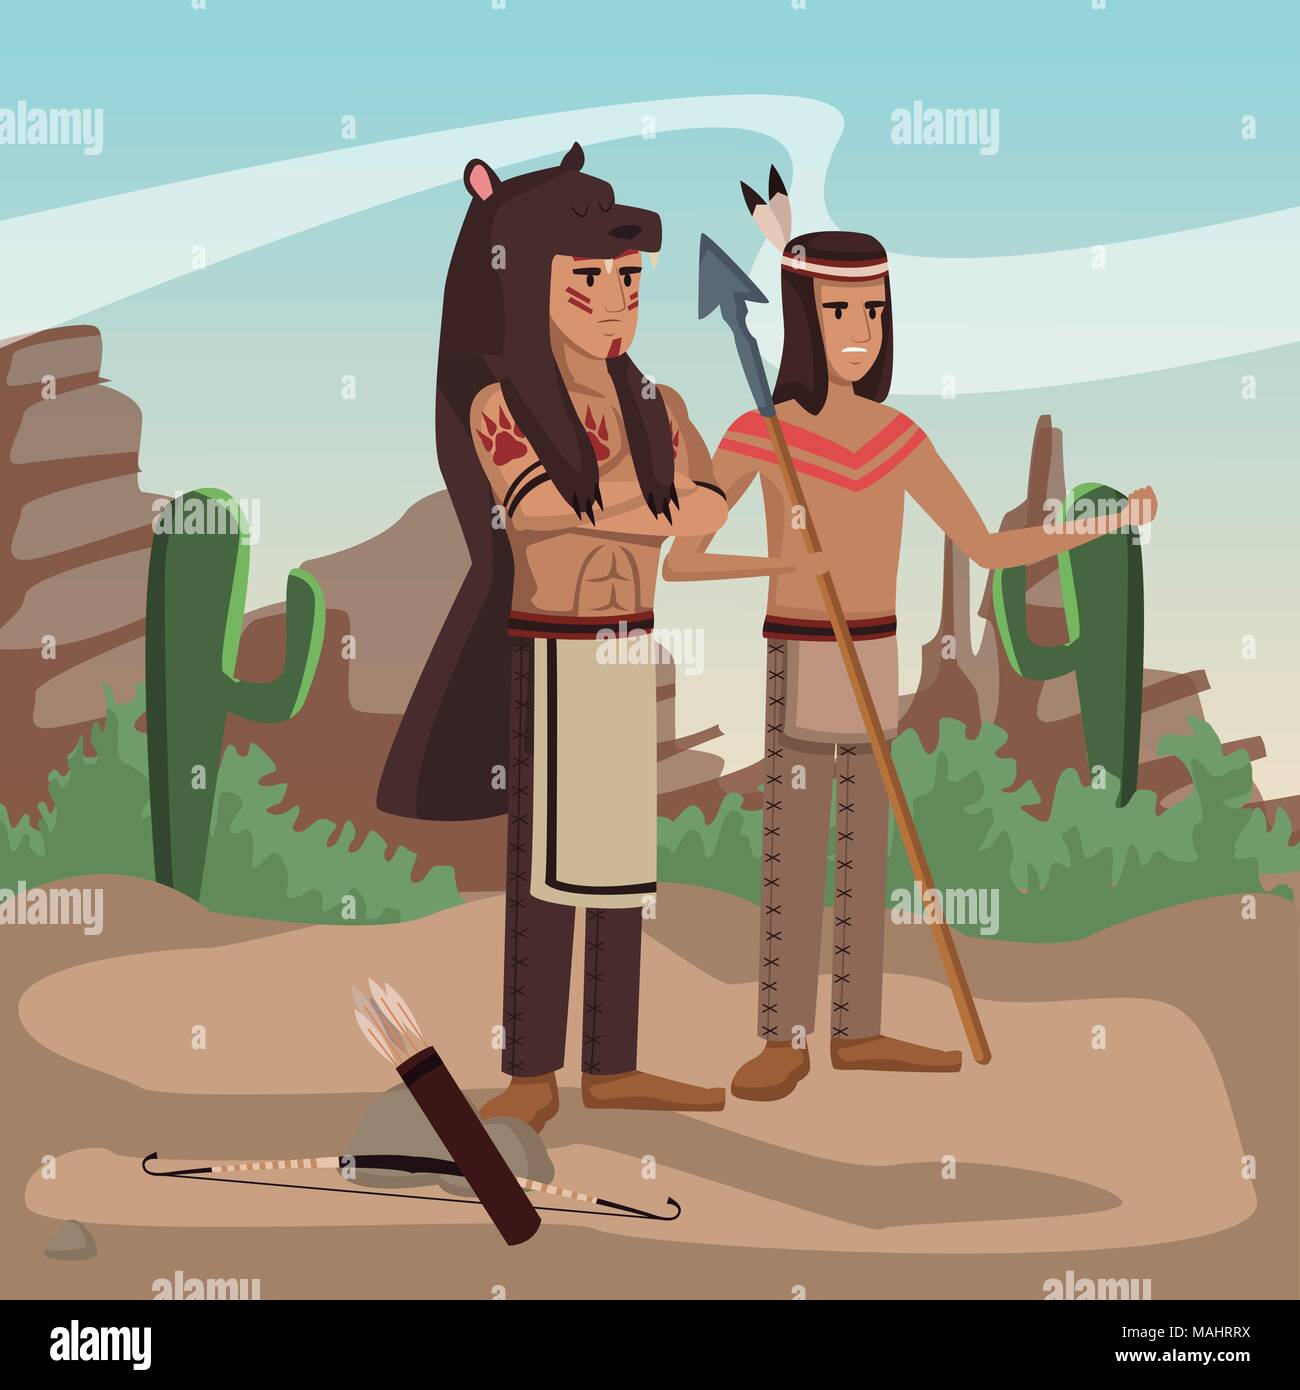 American Indian warriors presso il Village Illustrazione Vettoriale